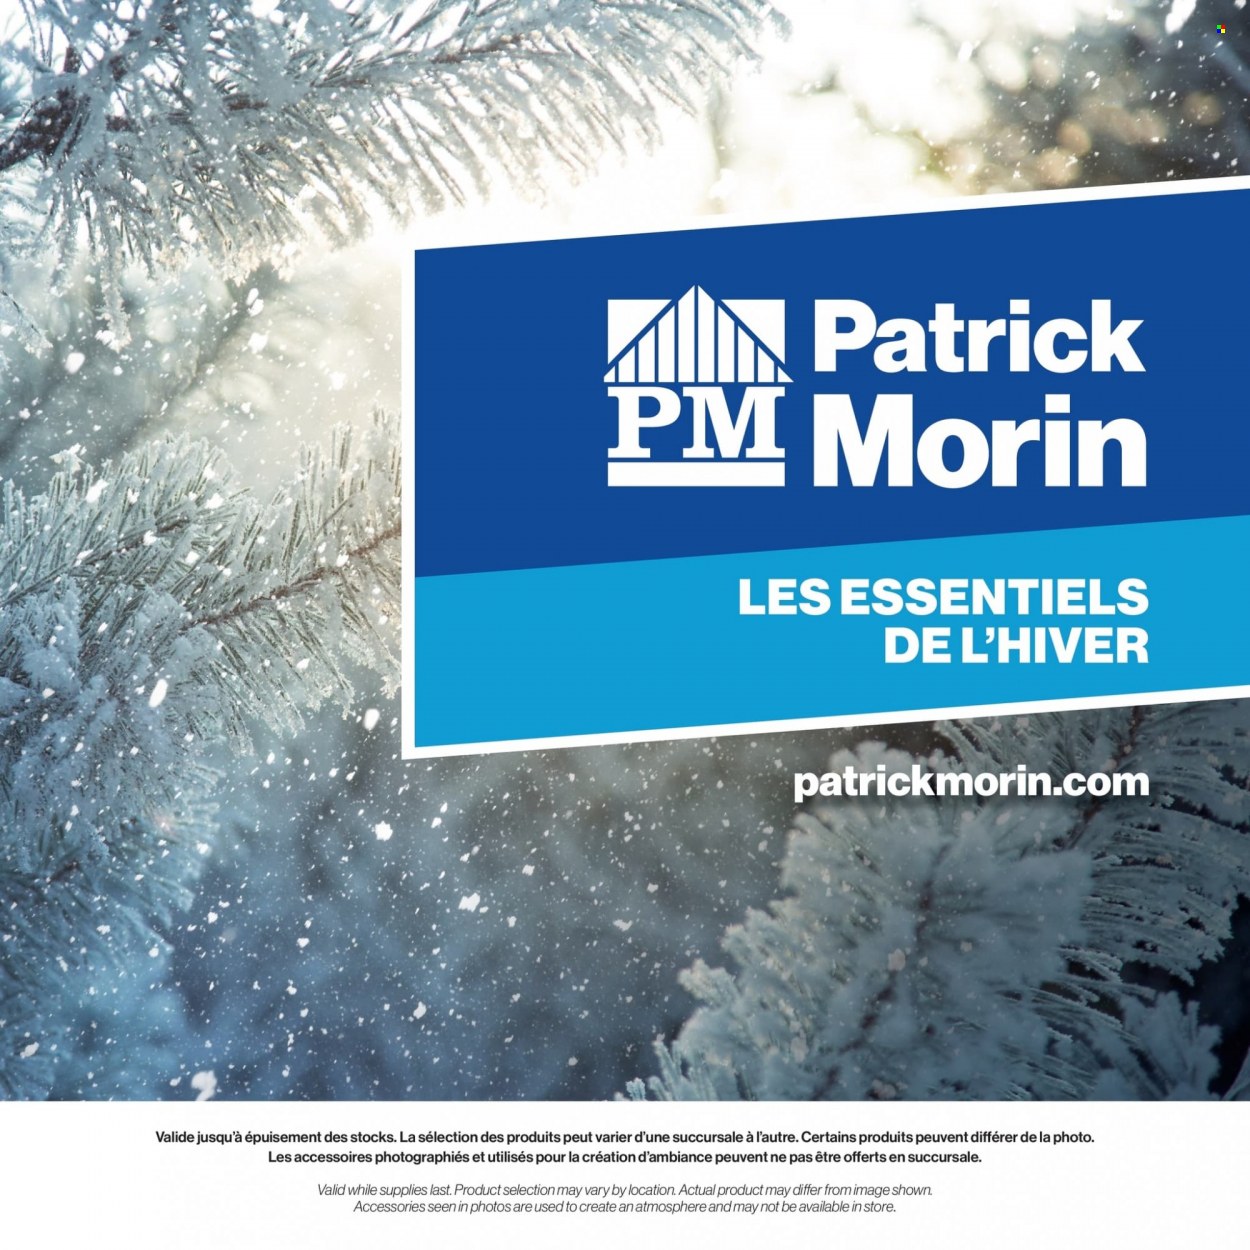 Patrick Morin flyer  - January 20, 2022 - February 28, 2022.